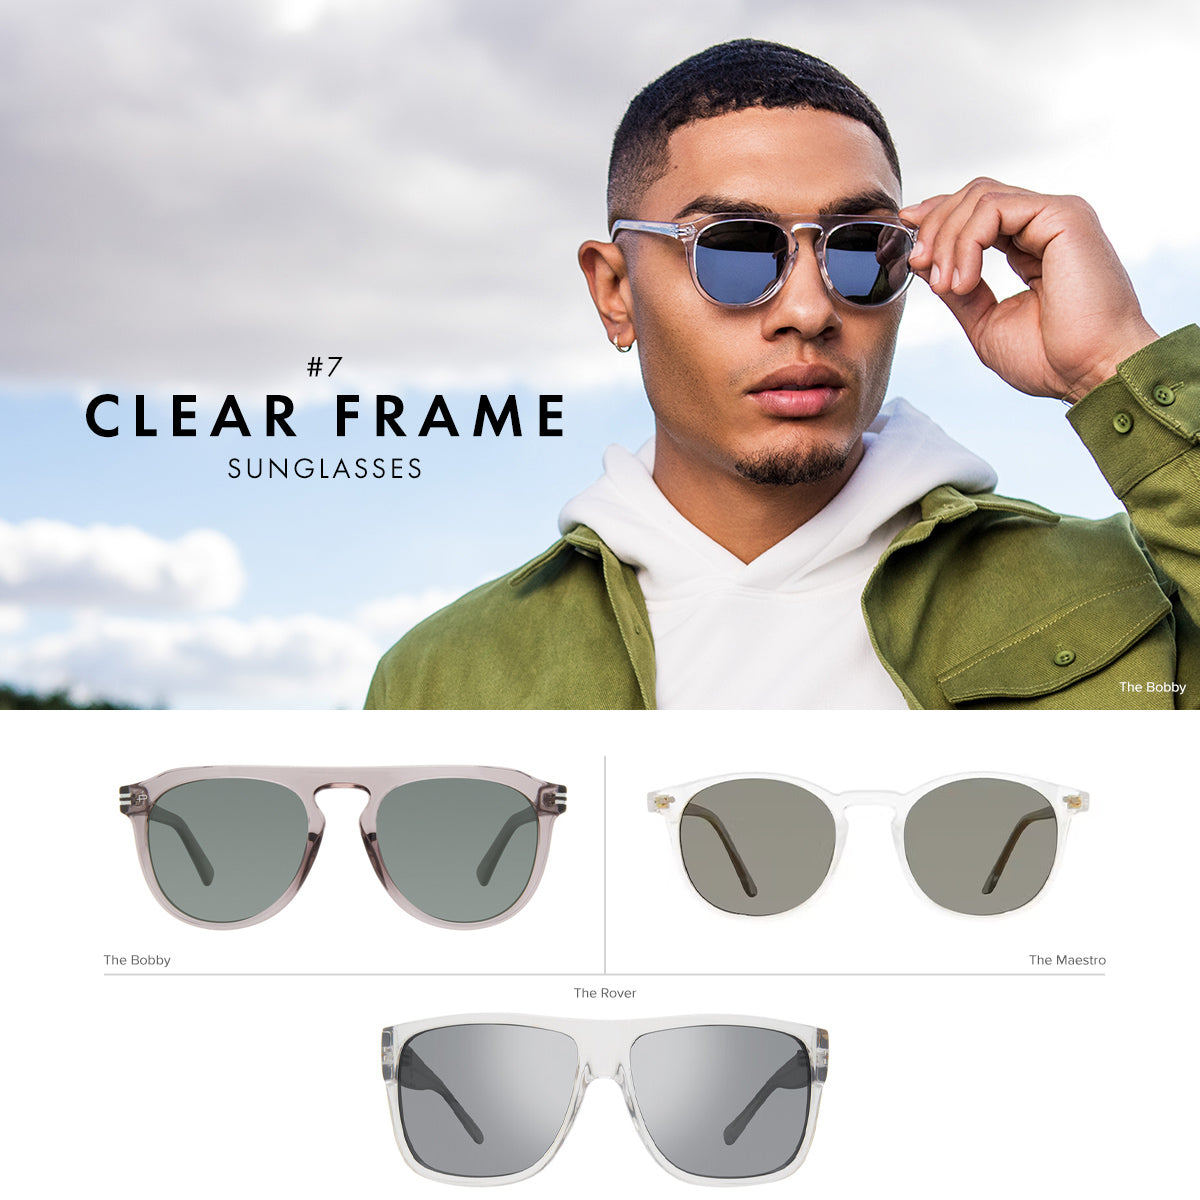 clear frame sunglasses for men